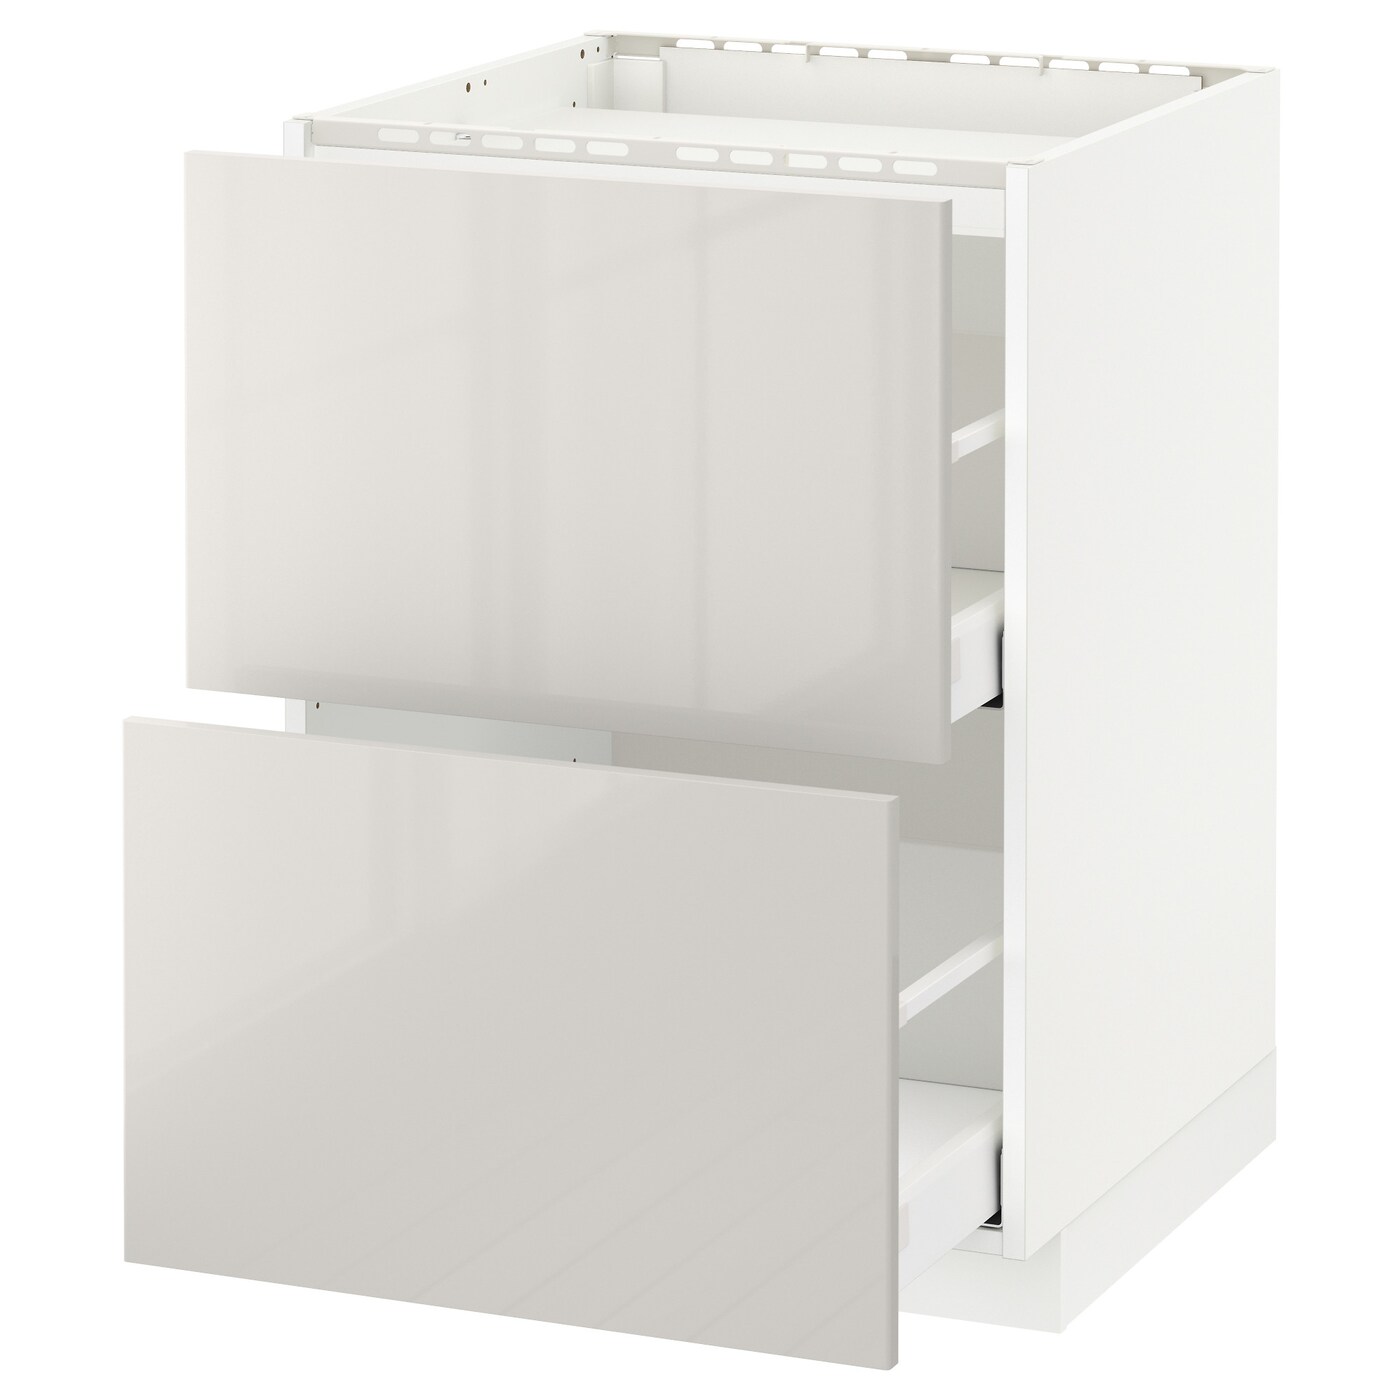 Напольный шкаф  - IKEA METOD MAXIMERA, 88x61,8x60см, белый/светло-серый, МЕТОД МАКСИМЕРА ИКЕА